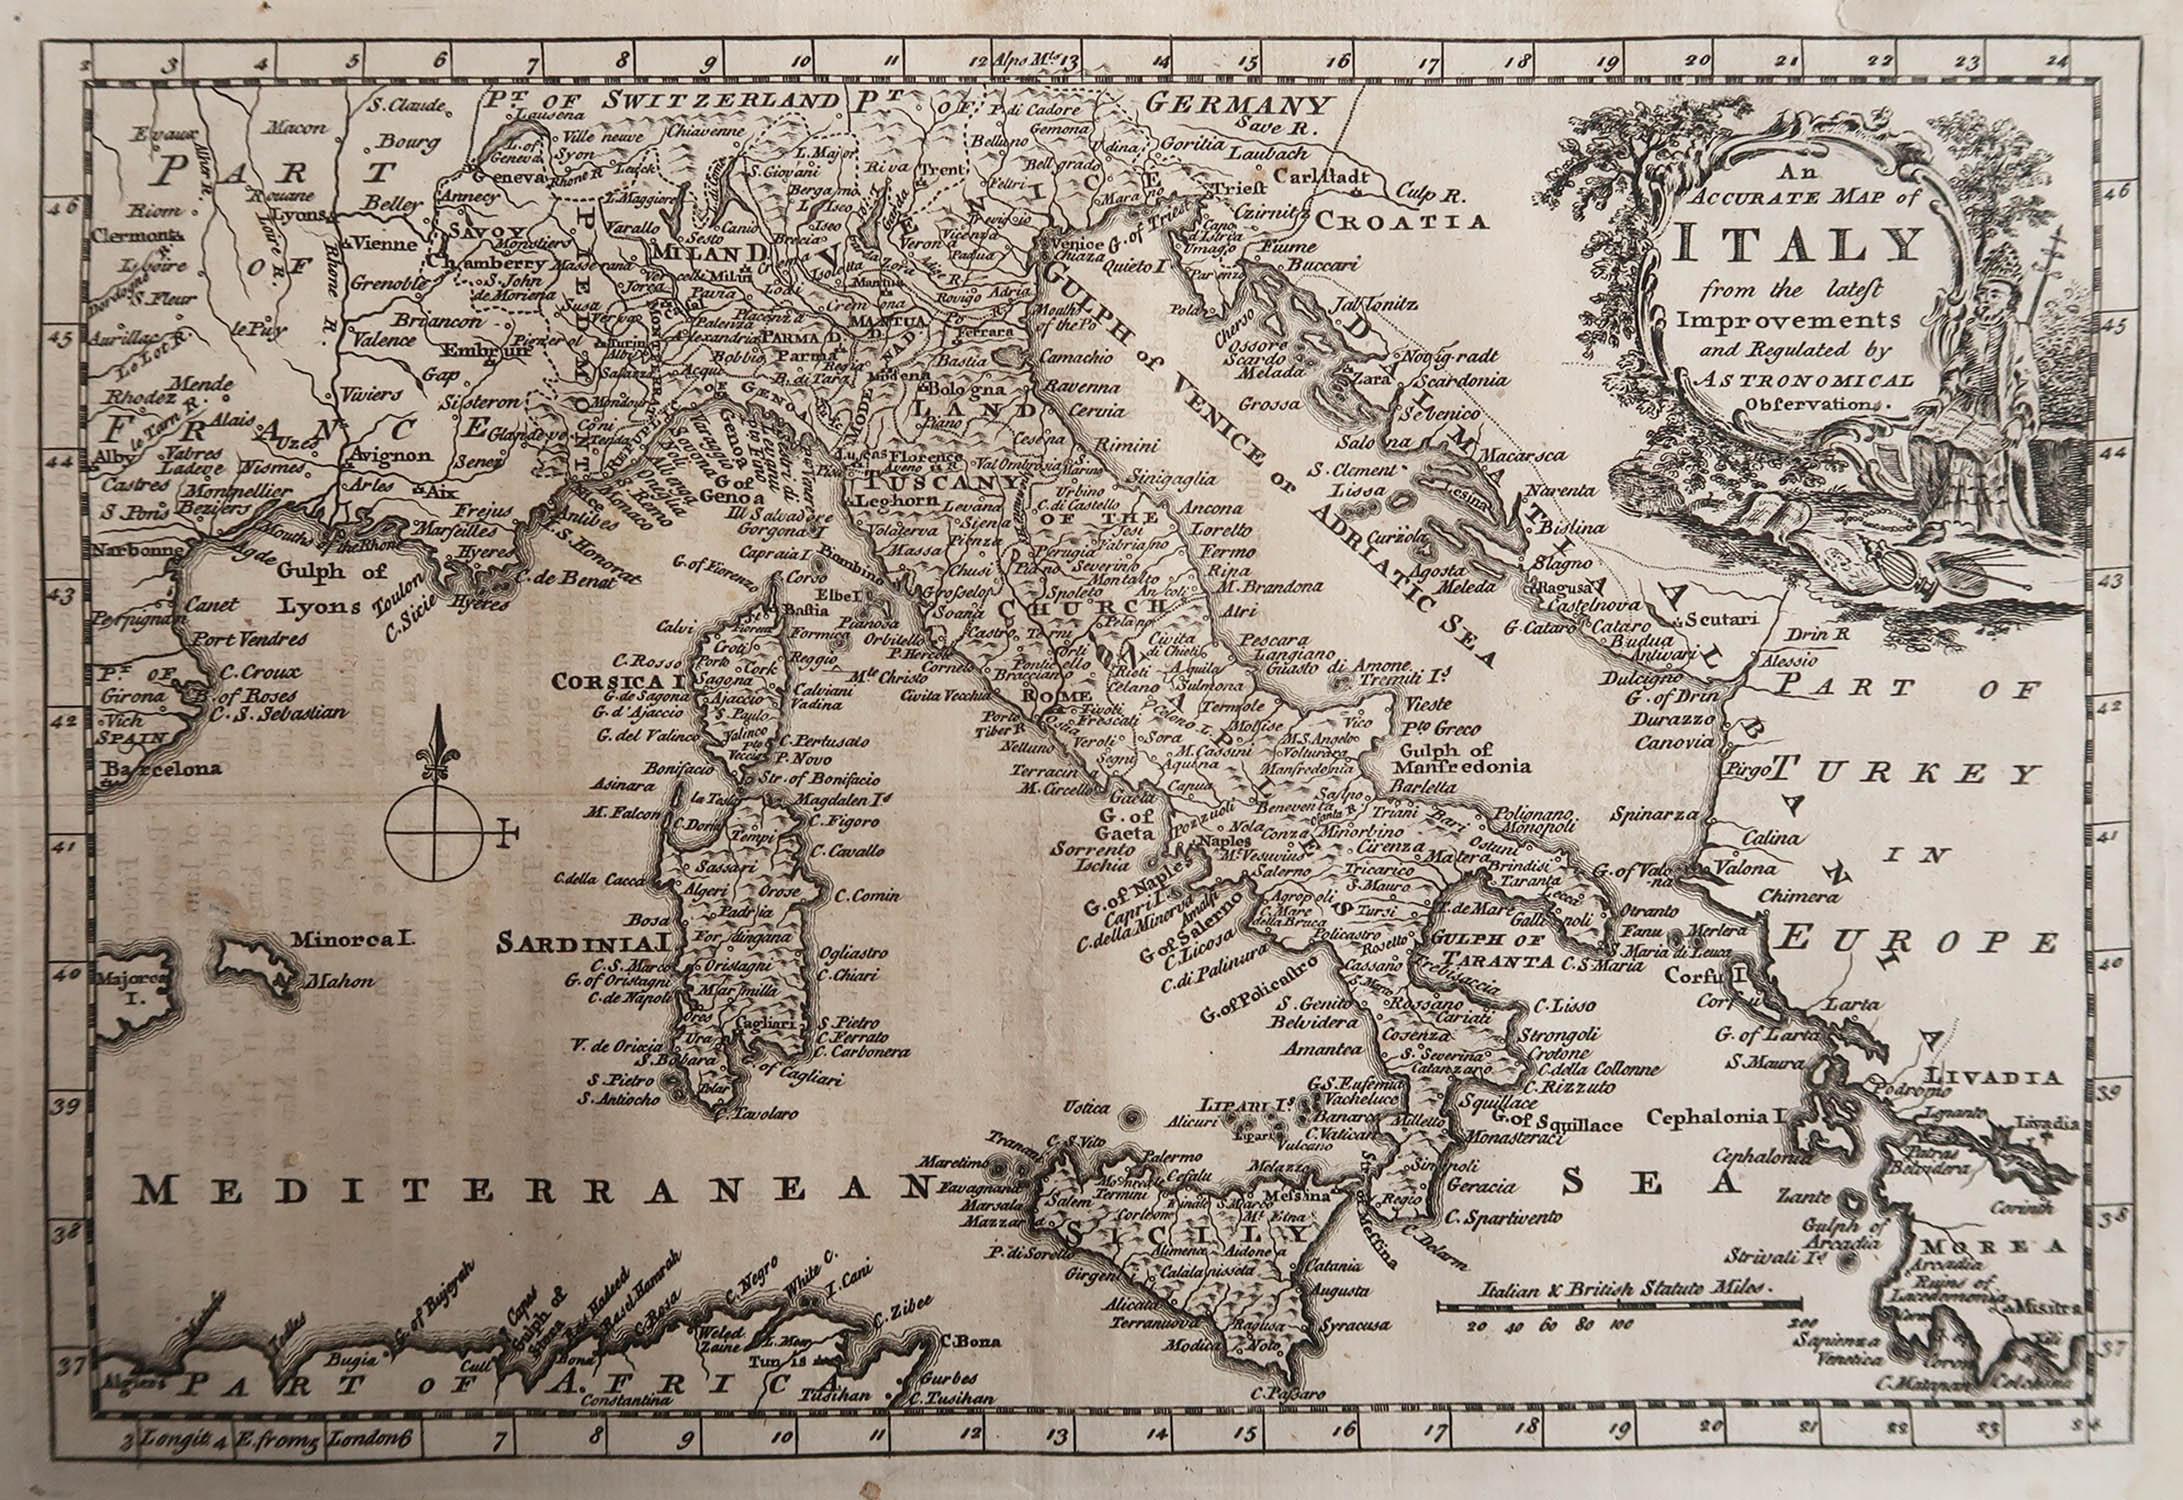 Grande carte de l'Italie

Gravure sur cuivre 

Publié A.C.C.

Non encadré.